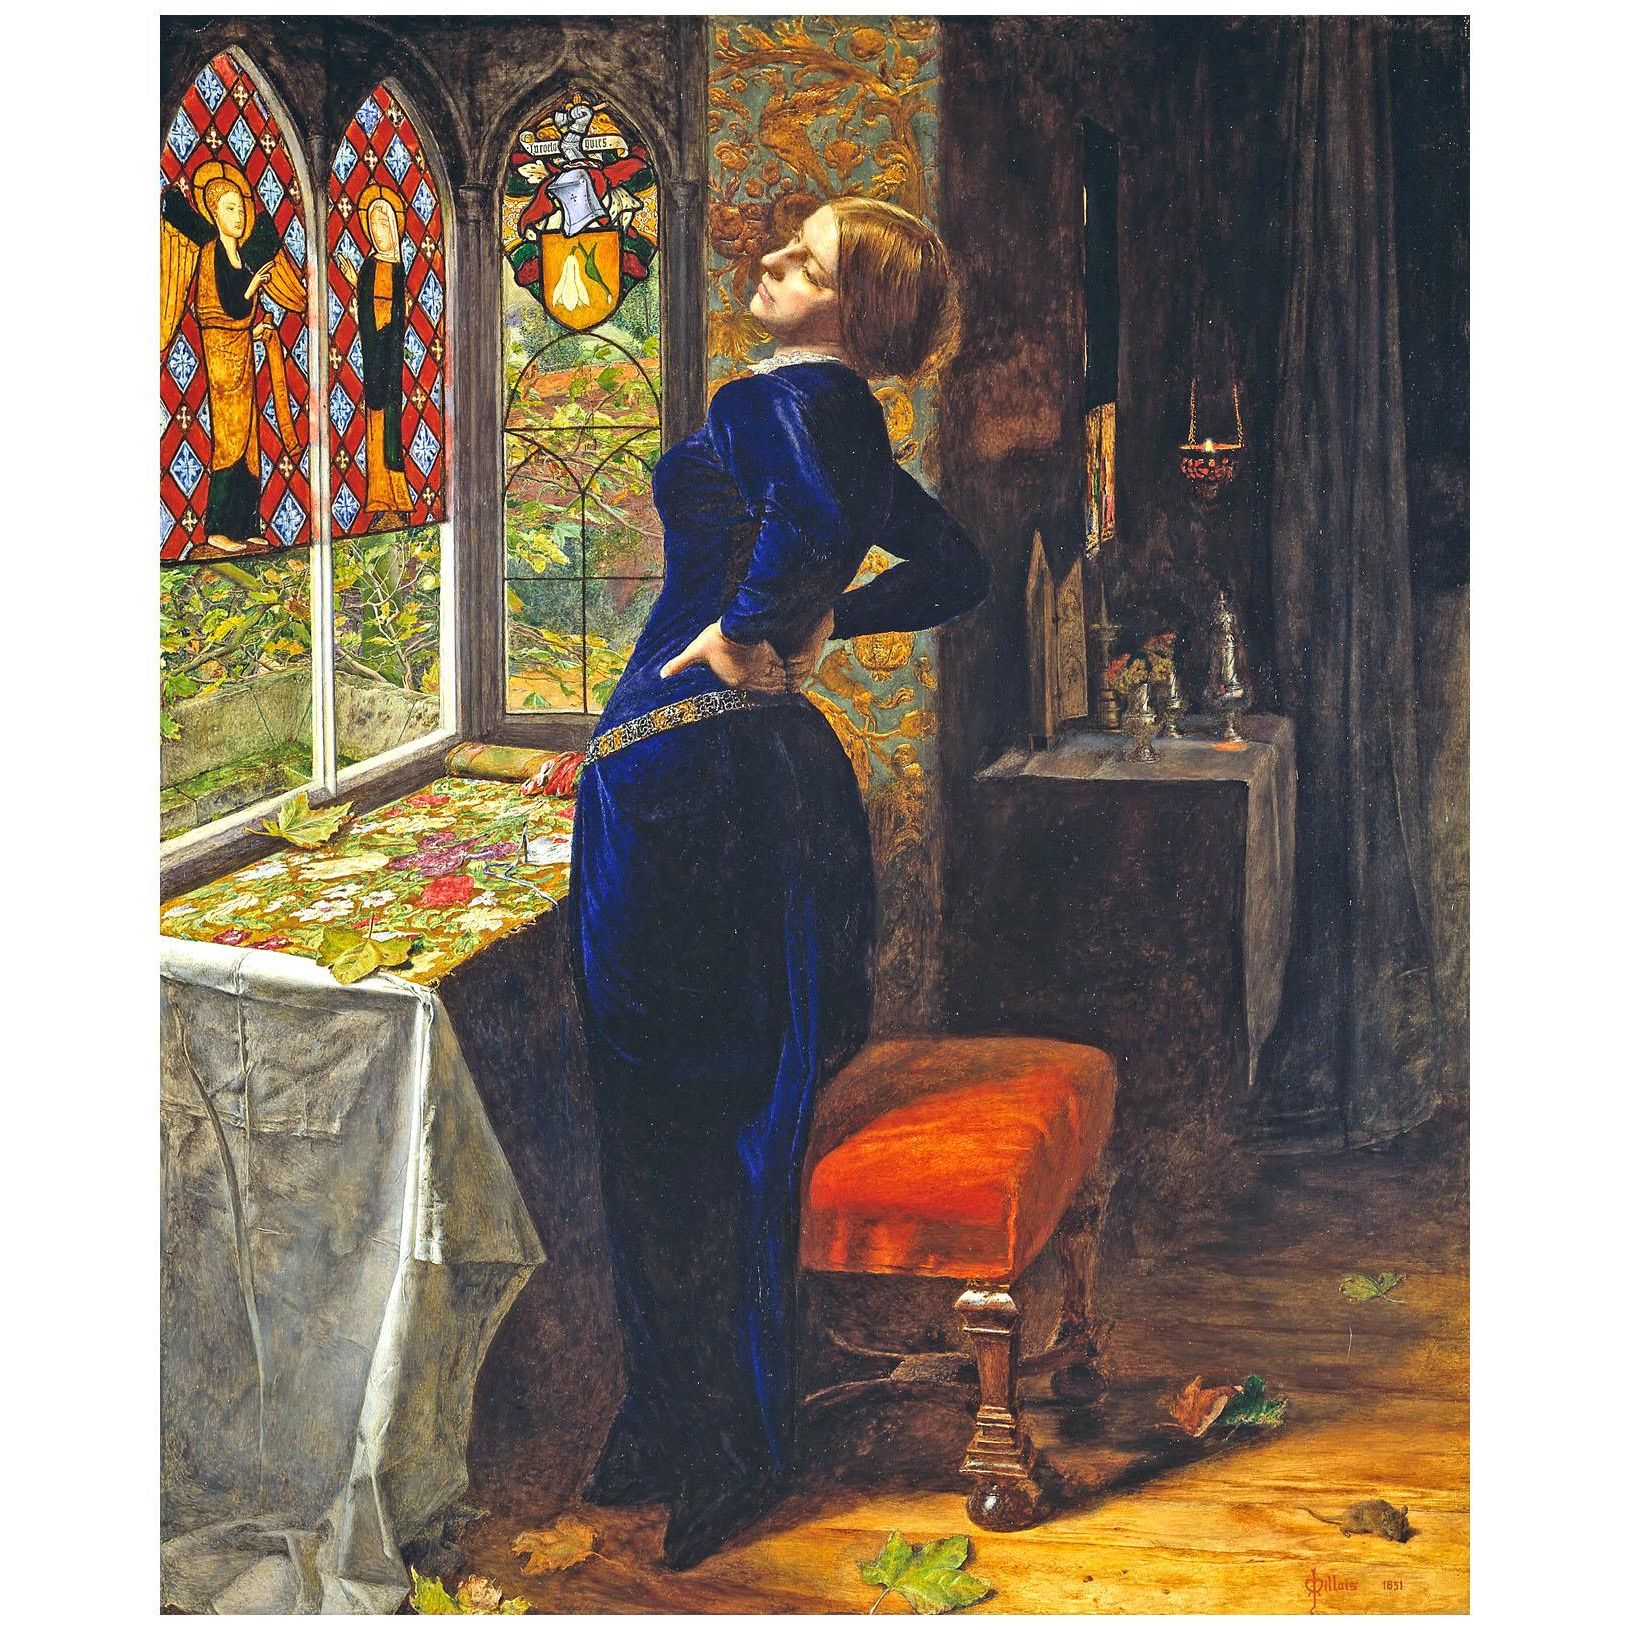 John Everett Millais. Marianna. 1851. Tate Britain